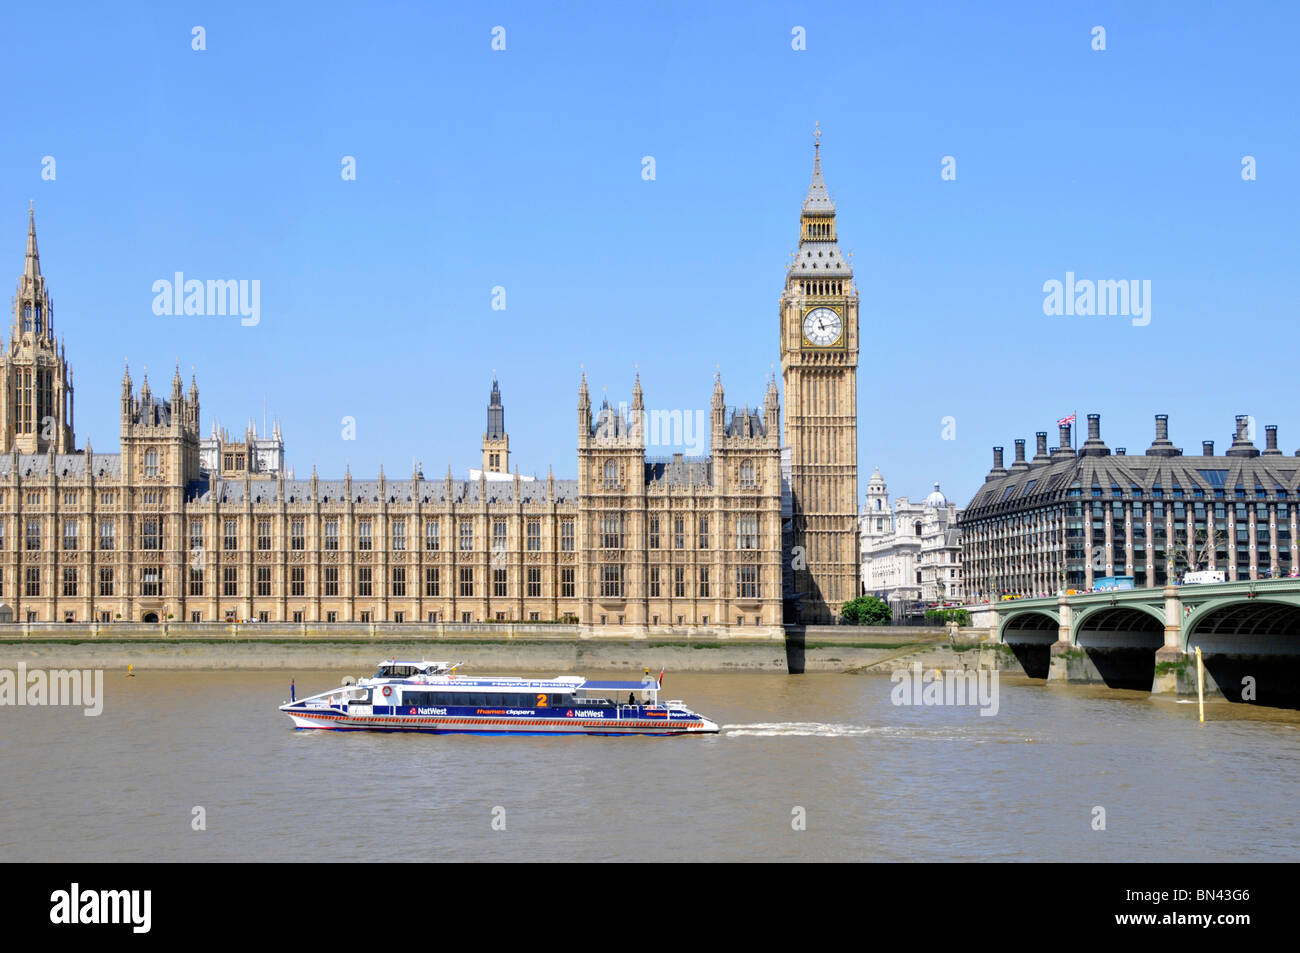 Torre dell'orologio Big Ben Elizabeth & Houses of Parliament, moderna Portcullis House, catamarano con clipper sul Tamigi e Westminster Bridge Londra, Inghilterra, Regno Unito Foto Stock